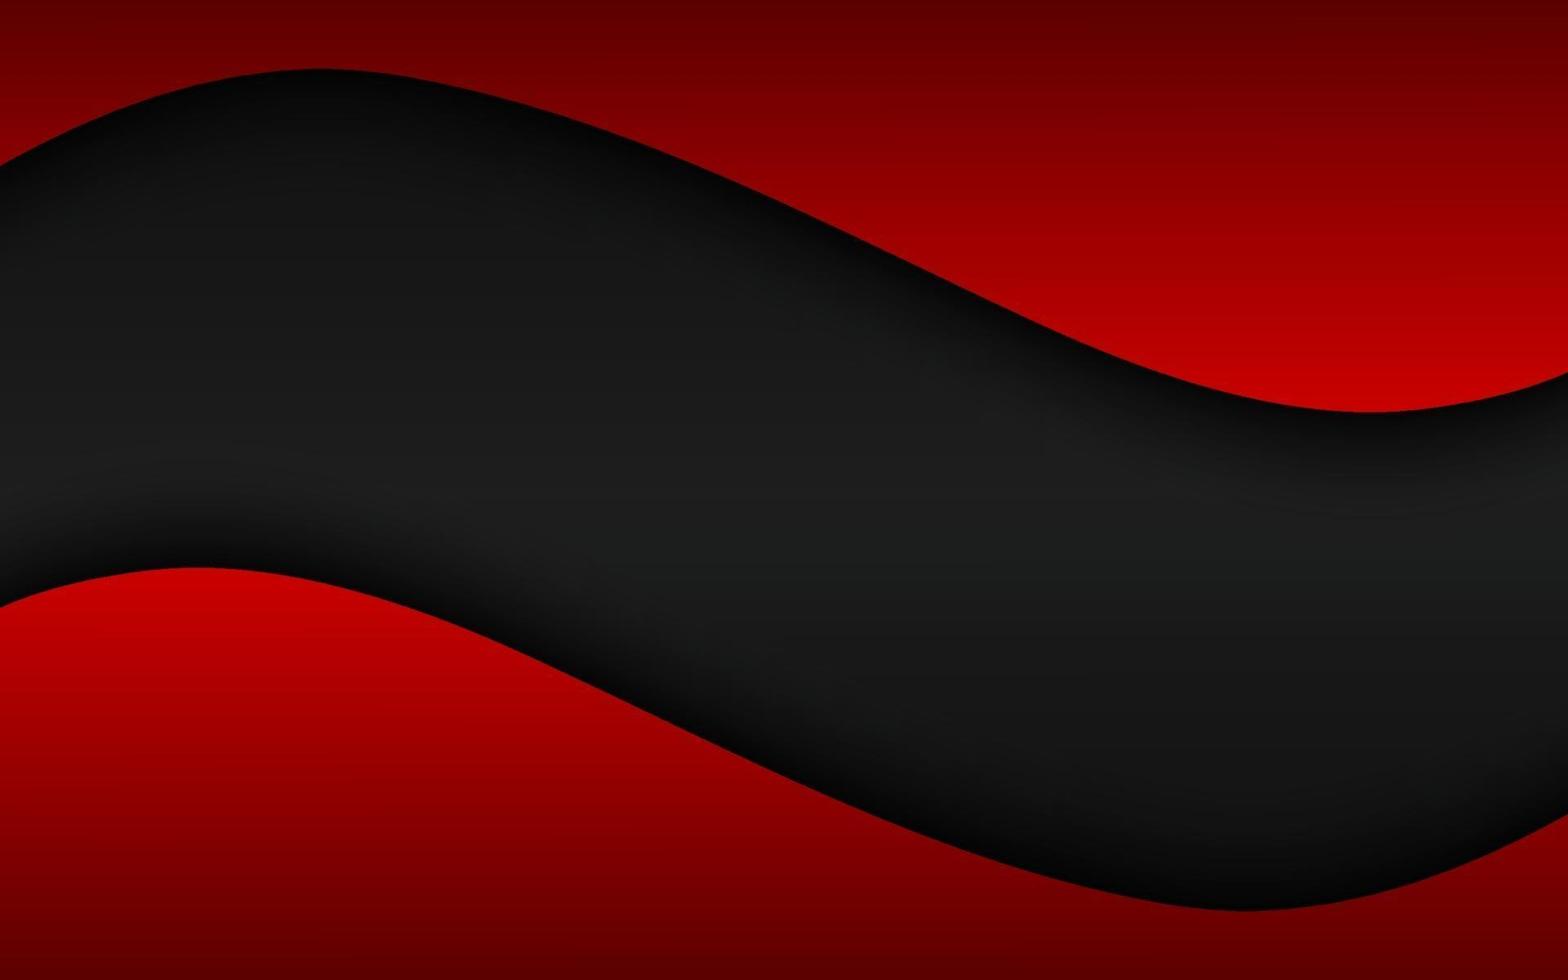 fond de vecteur abstrait vague noire et rouge avec un espace vide pour votre texte. illustration vectorielle de design d & # 39; entreprise moderne